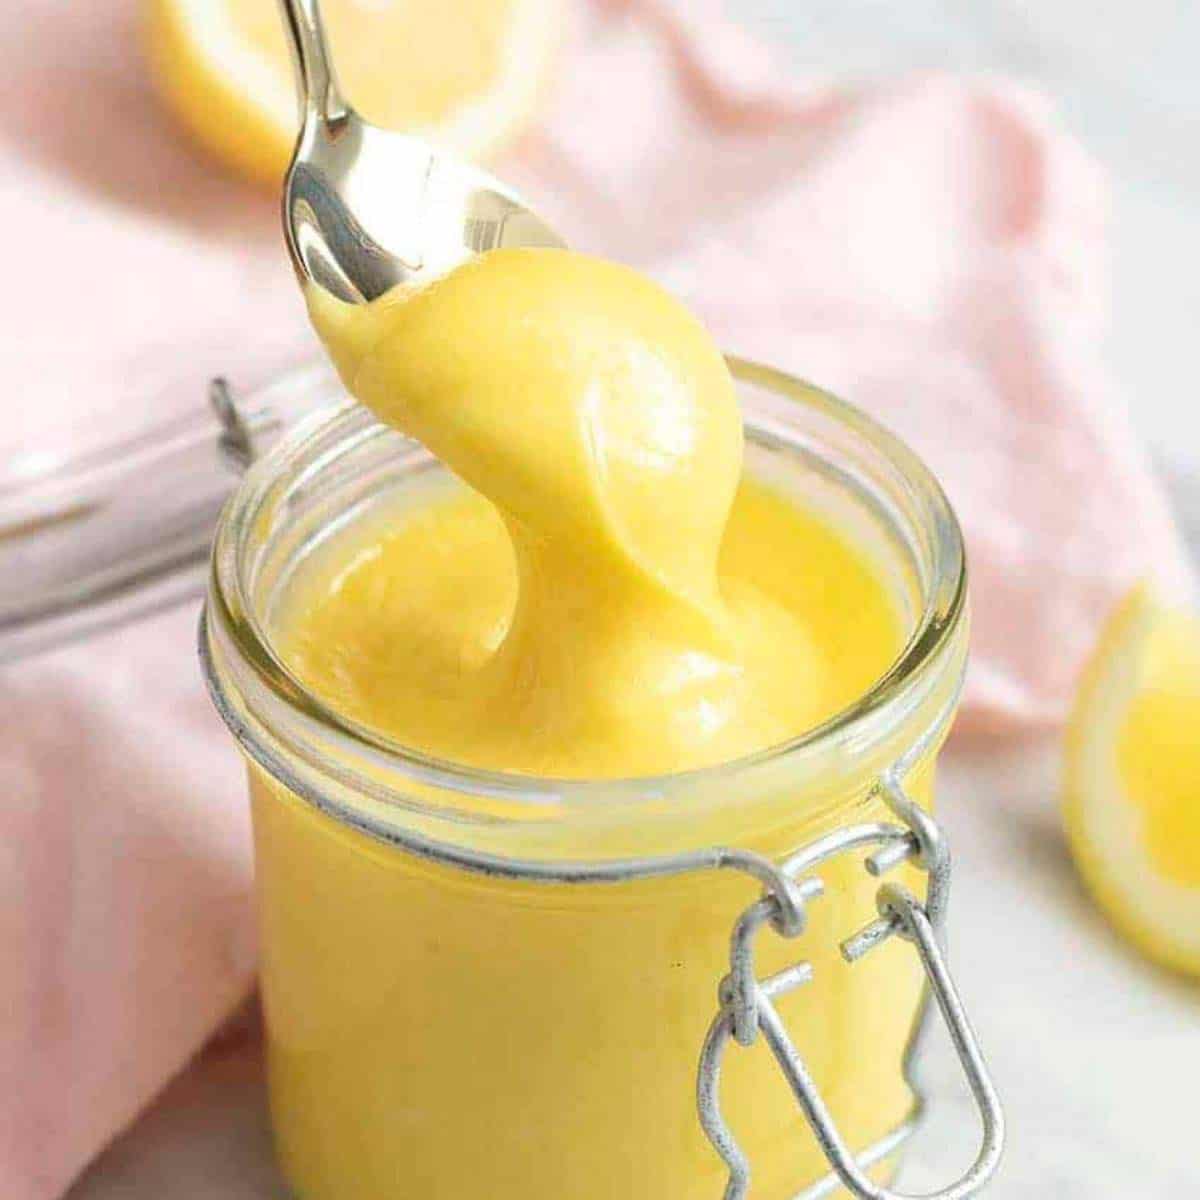 The Best Homemade Lemon Curd - The Flavor Bender